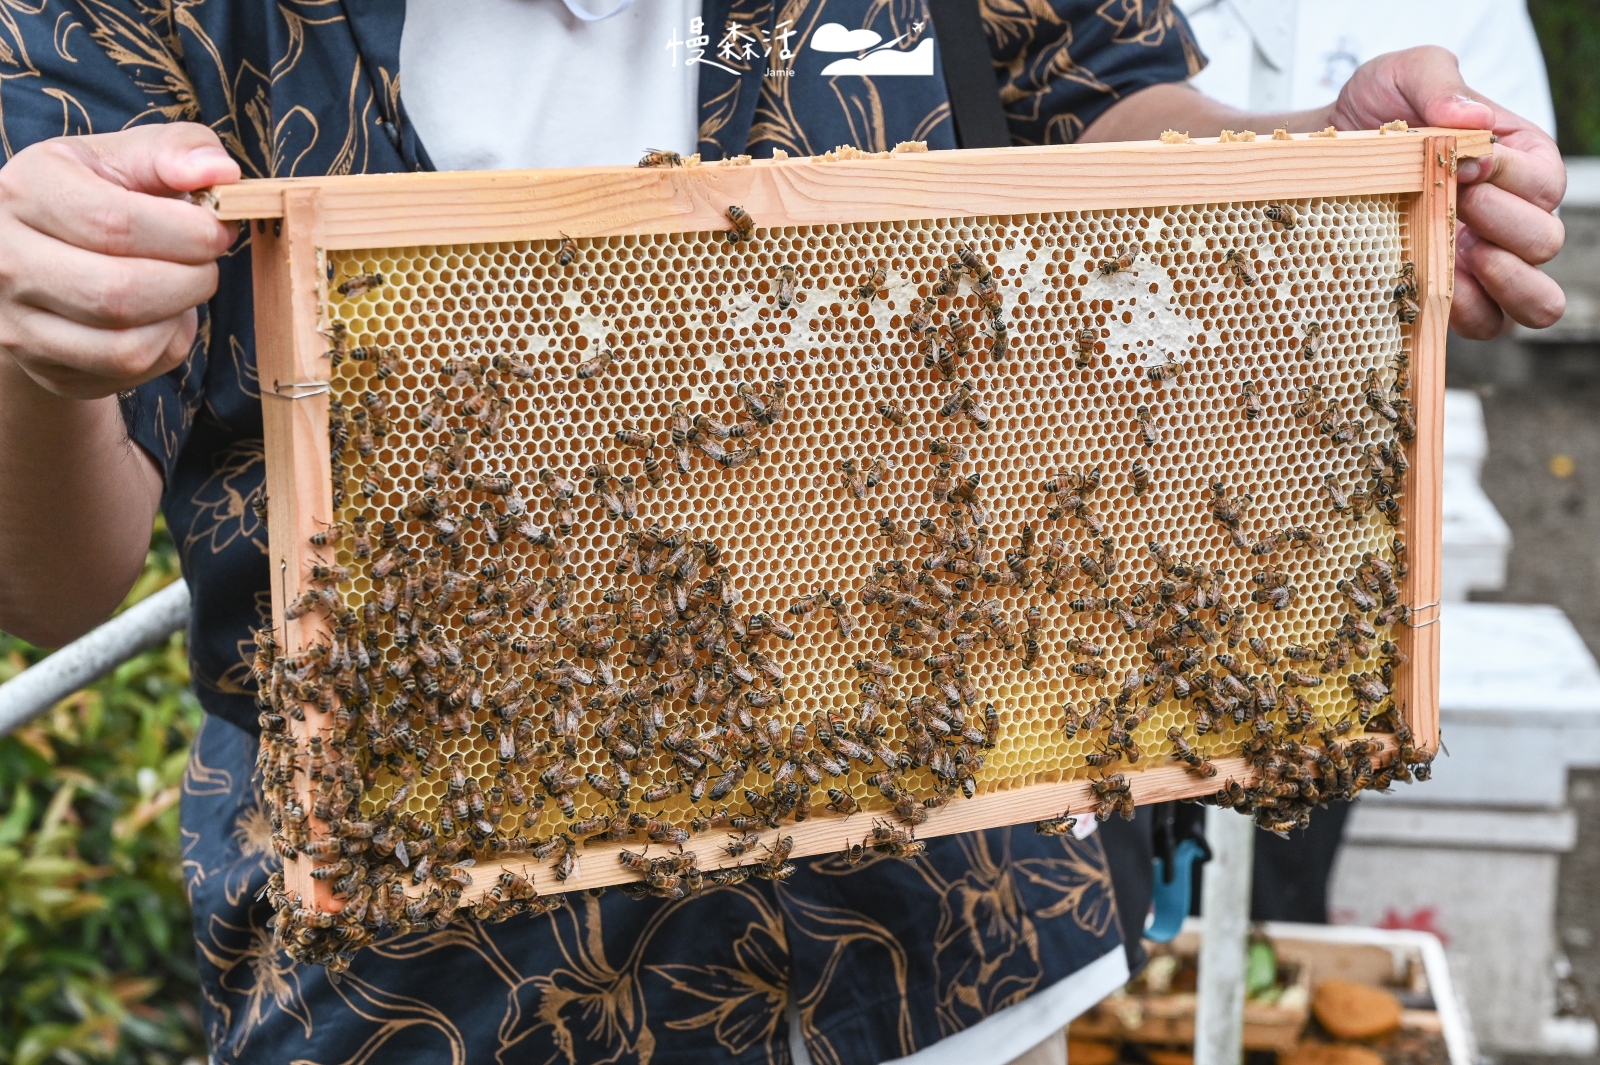 南投縣埔里鎮 賴爺爺蜜蜂小森林觀光生態園區 養蜂綠園區與蜂巢近距離互動